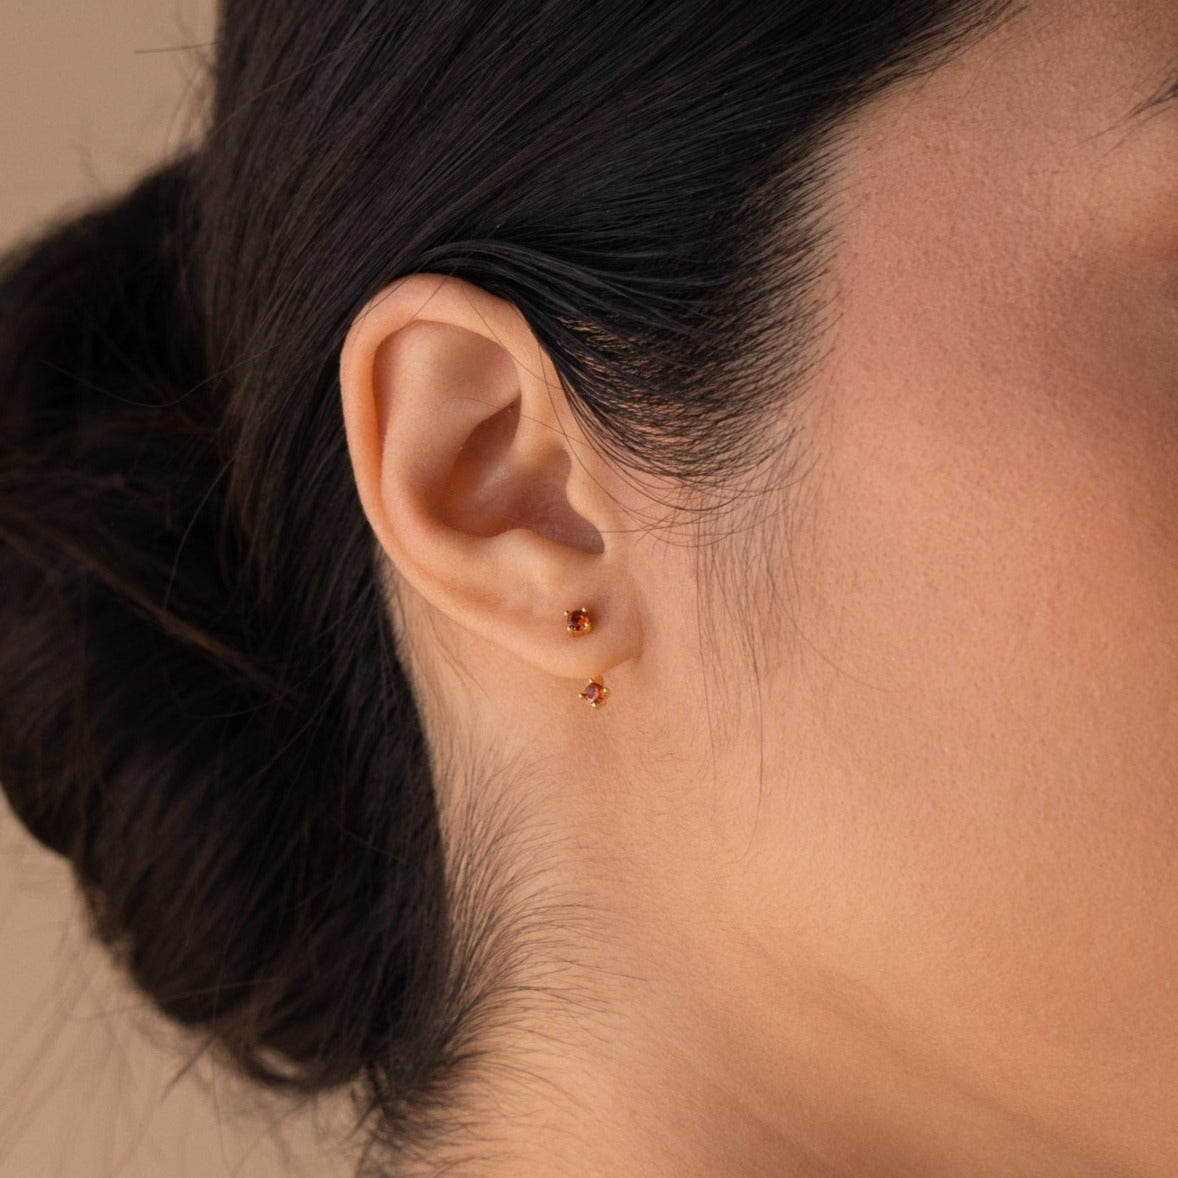 Shiny Delicate Stud Earrings Ear Jacket Zinc Alloy Jewelry - Temu